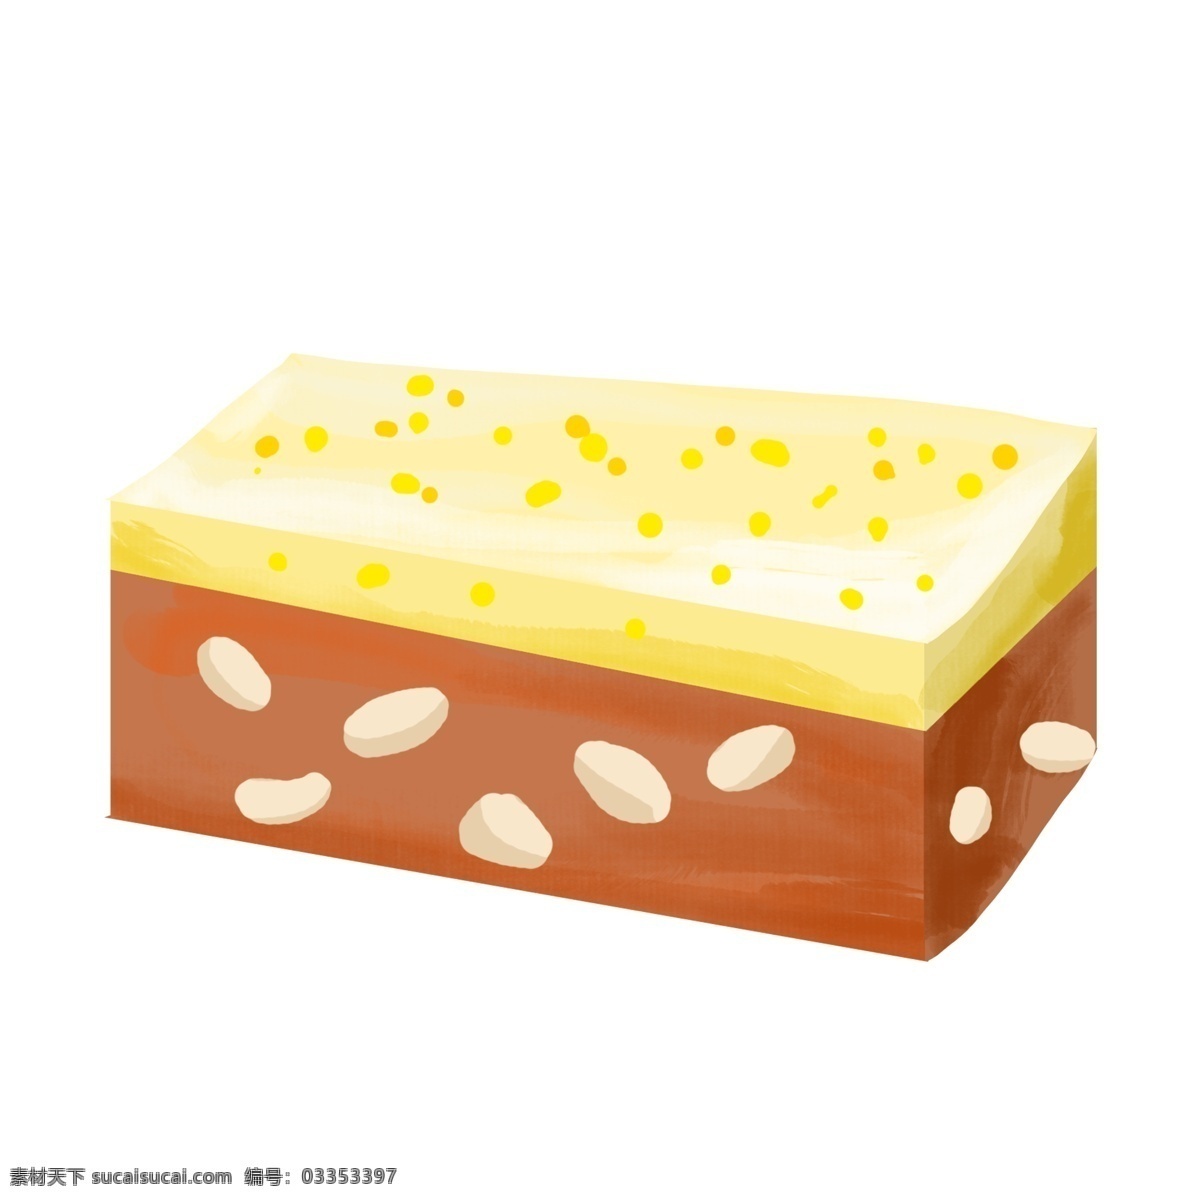 夹心 面包 装饰 插画 夹心面包 黄色的面包 漂亮的面包 营养面包 烘焙面包 面包装饰 面包插画